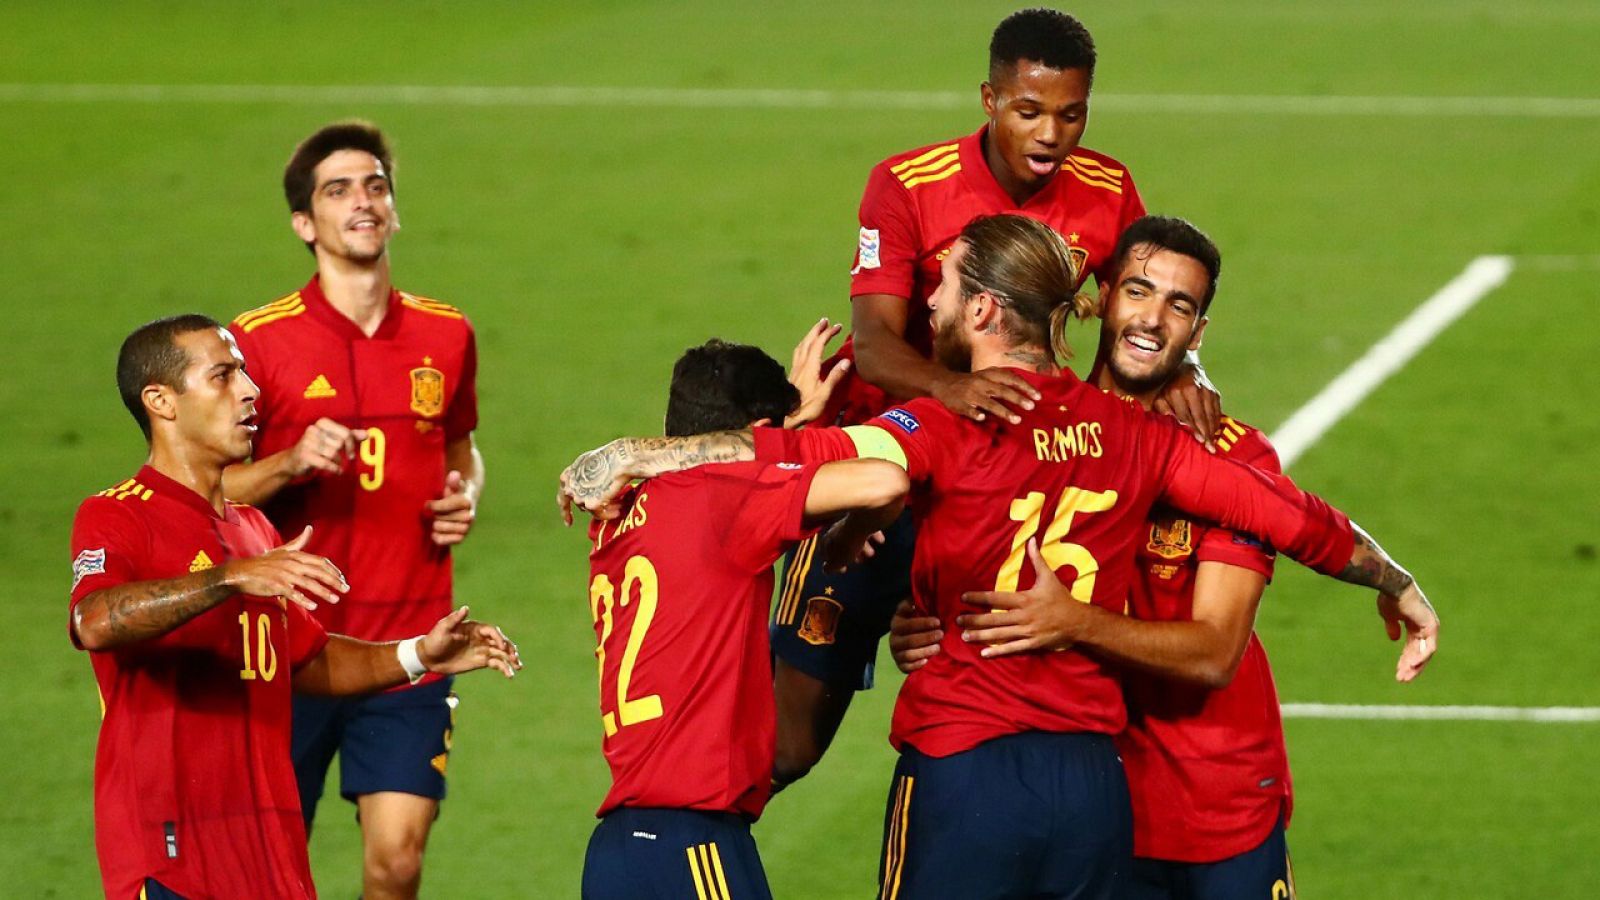 España 4-0 Ucrania, resumen y goles del partido